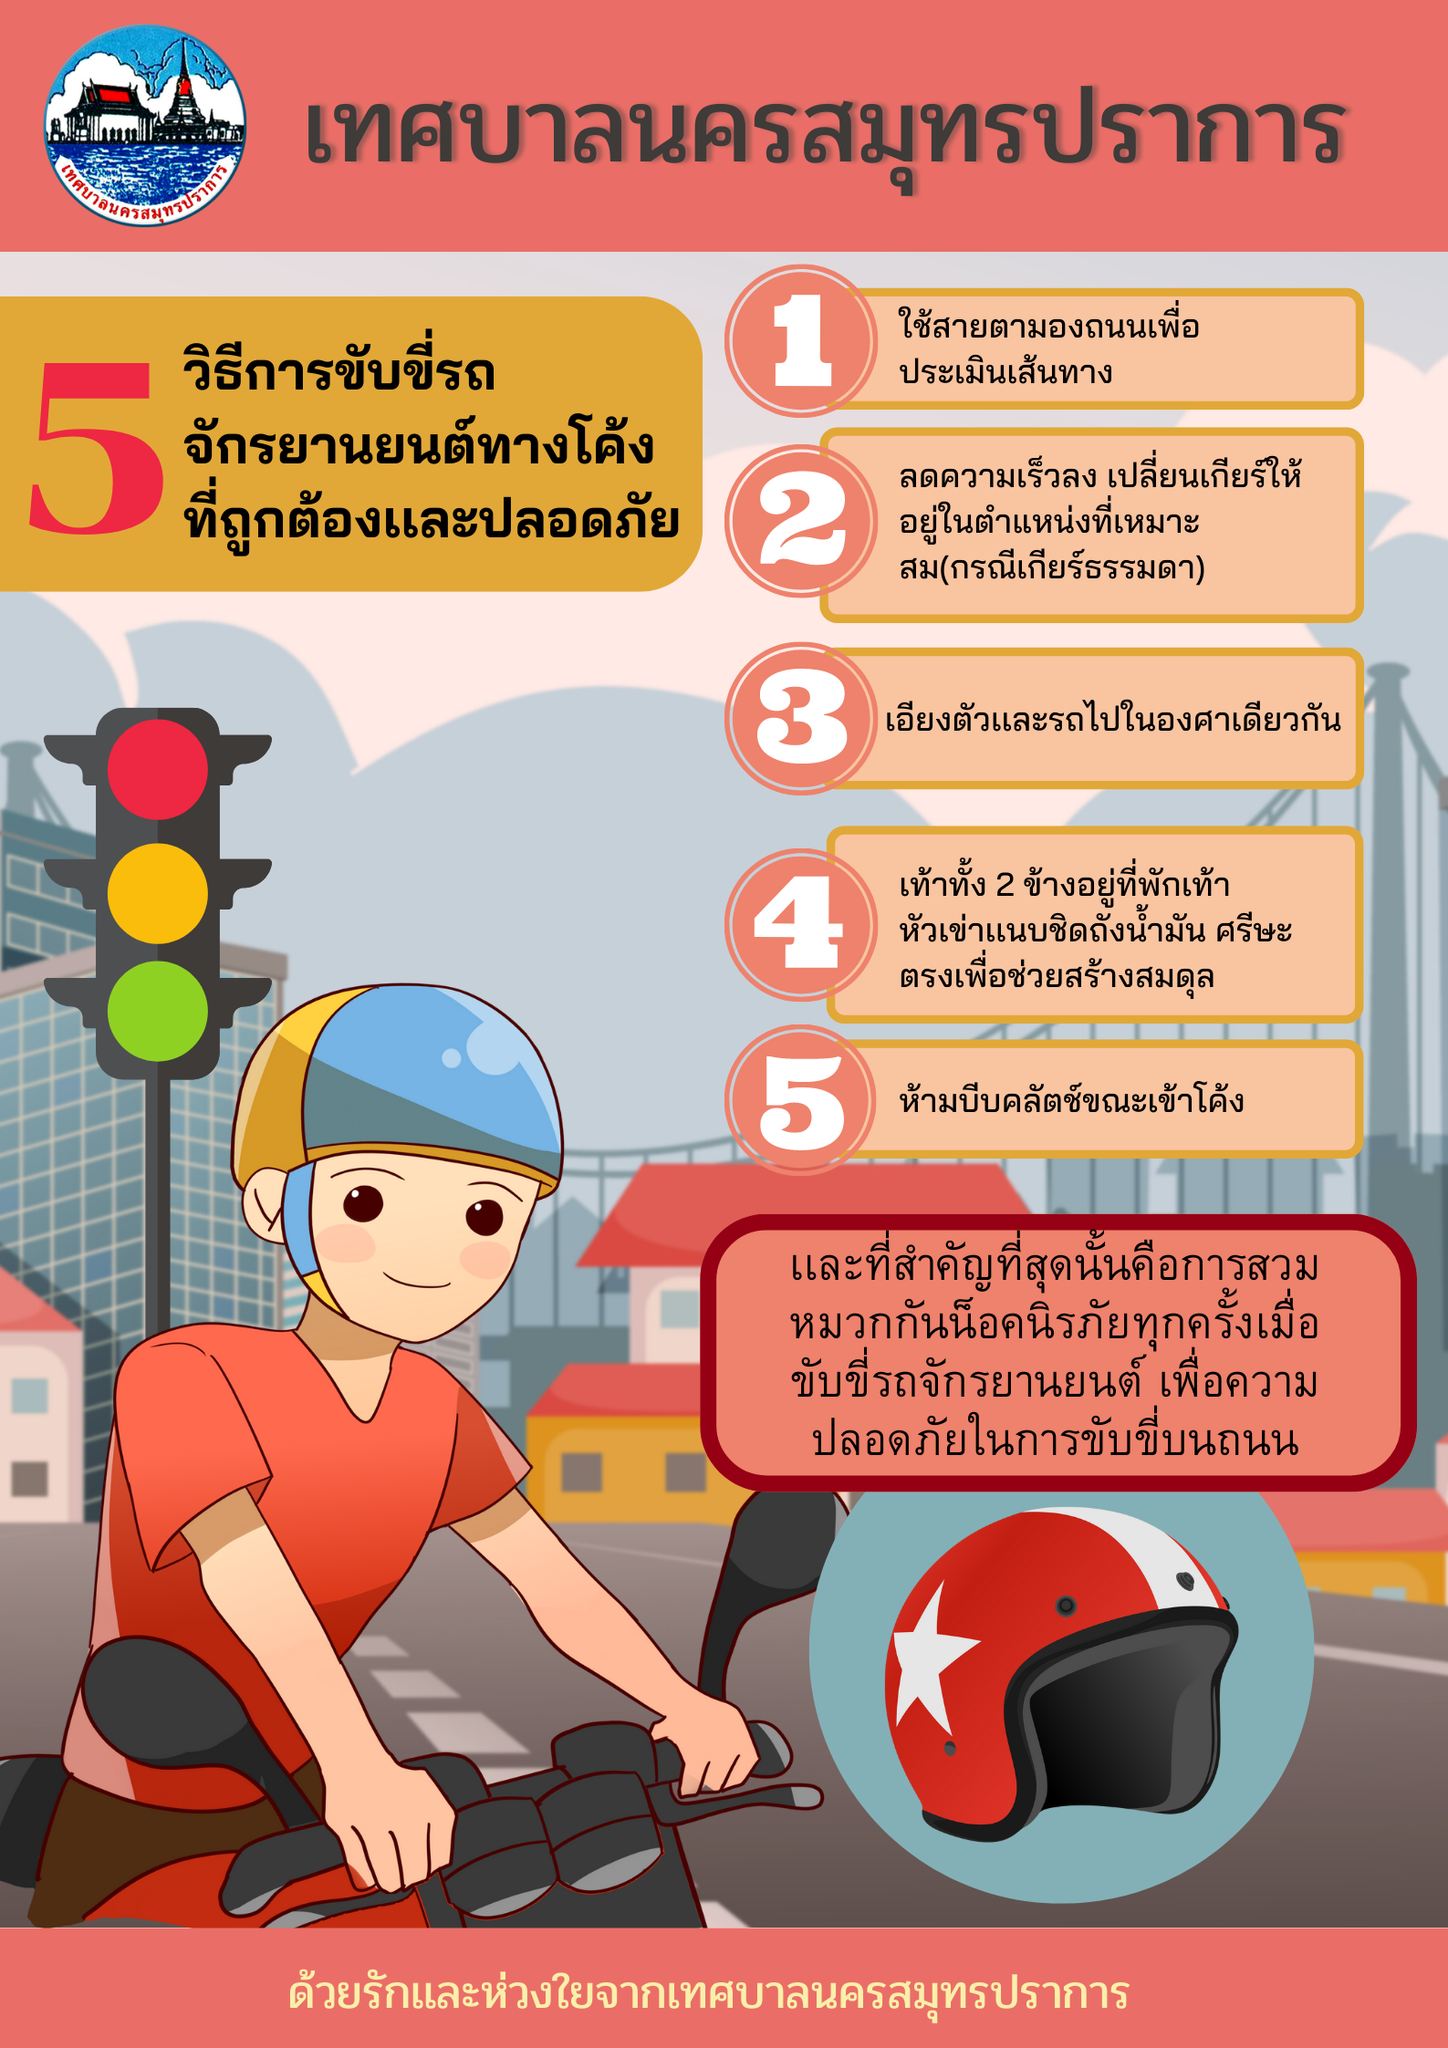 5 วิธีการขับขี่รถจักรยานยนต์ทางโค้งที่ถูกต้องและปลอดภัย